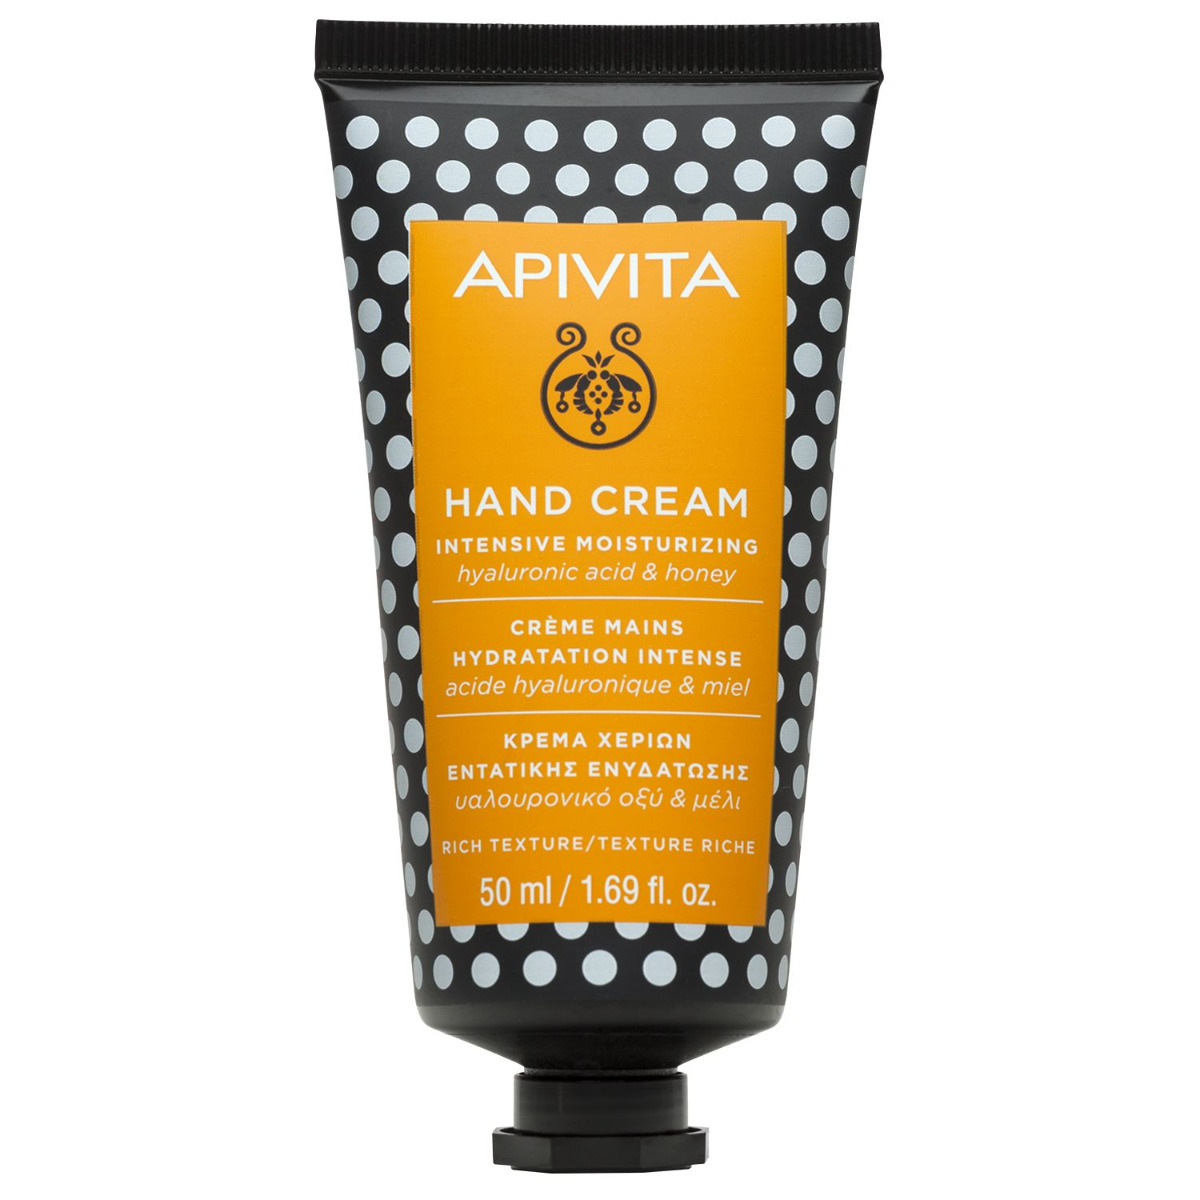 APIVITA Hand Cream Intensive Moisturizing intenzivně hydratující krém na ruce 50 ml APIVITA